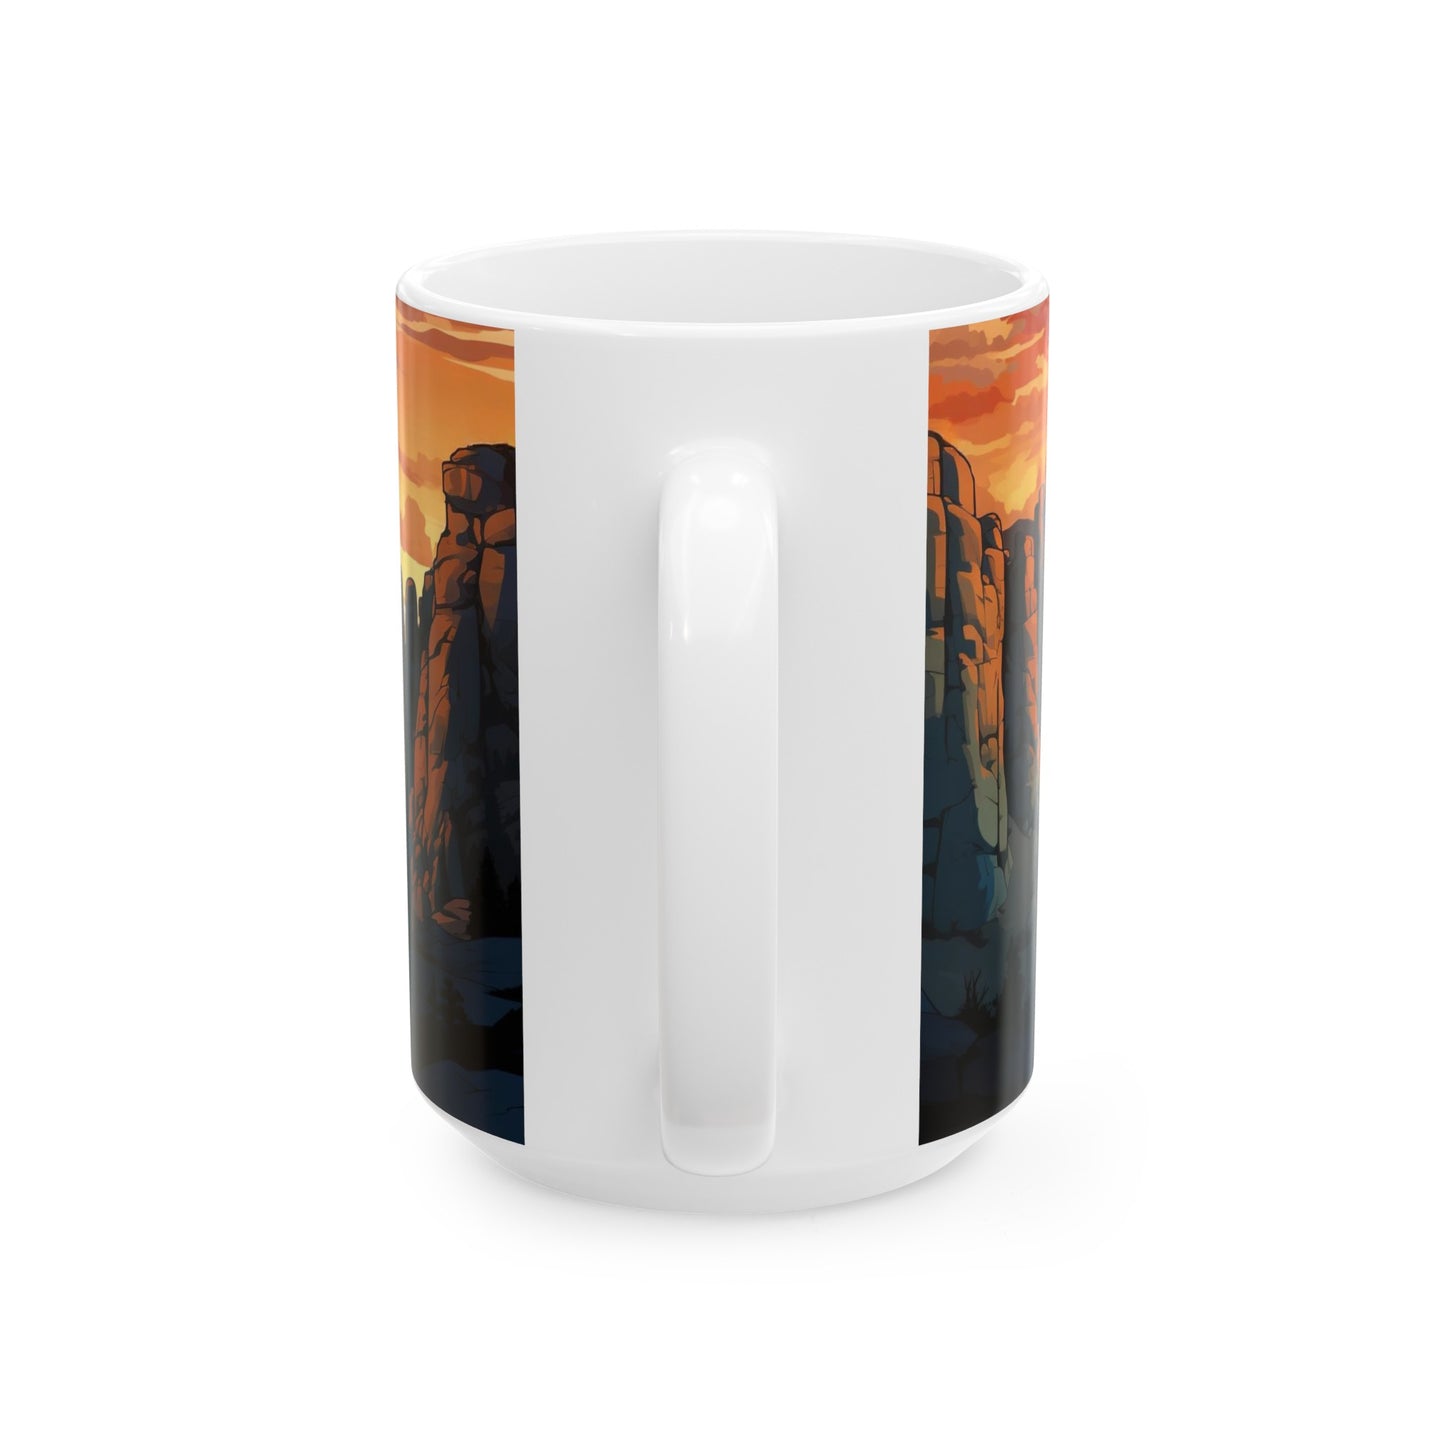 Pinnacles National Park Mug | White Ceramic Mug (11oz, 15oz)